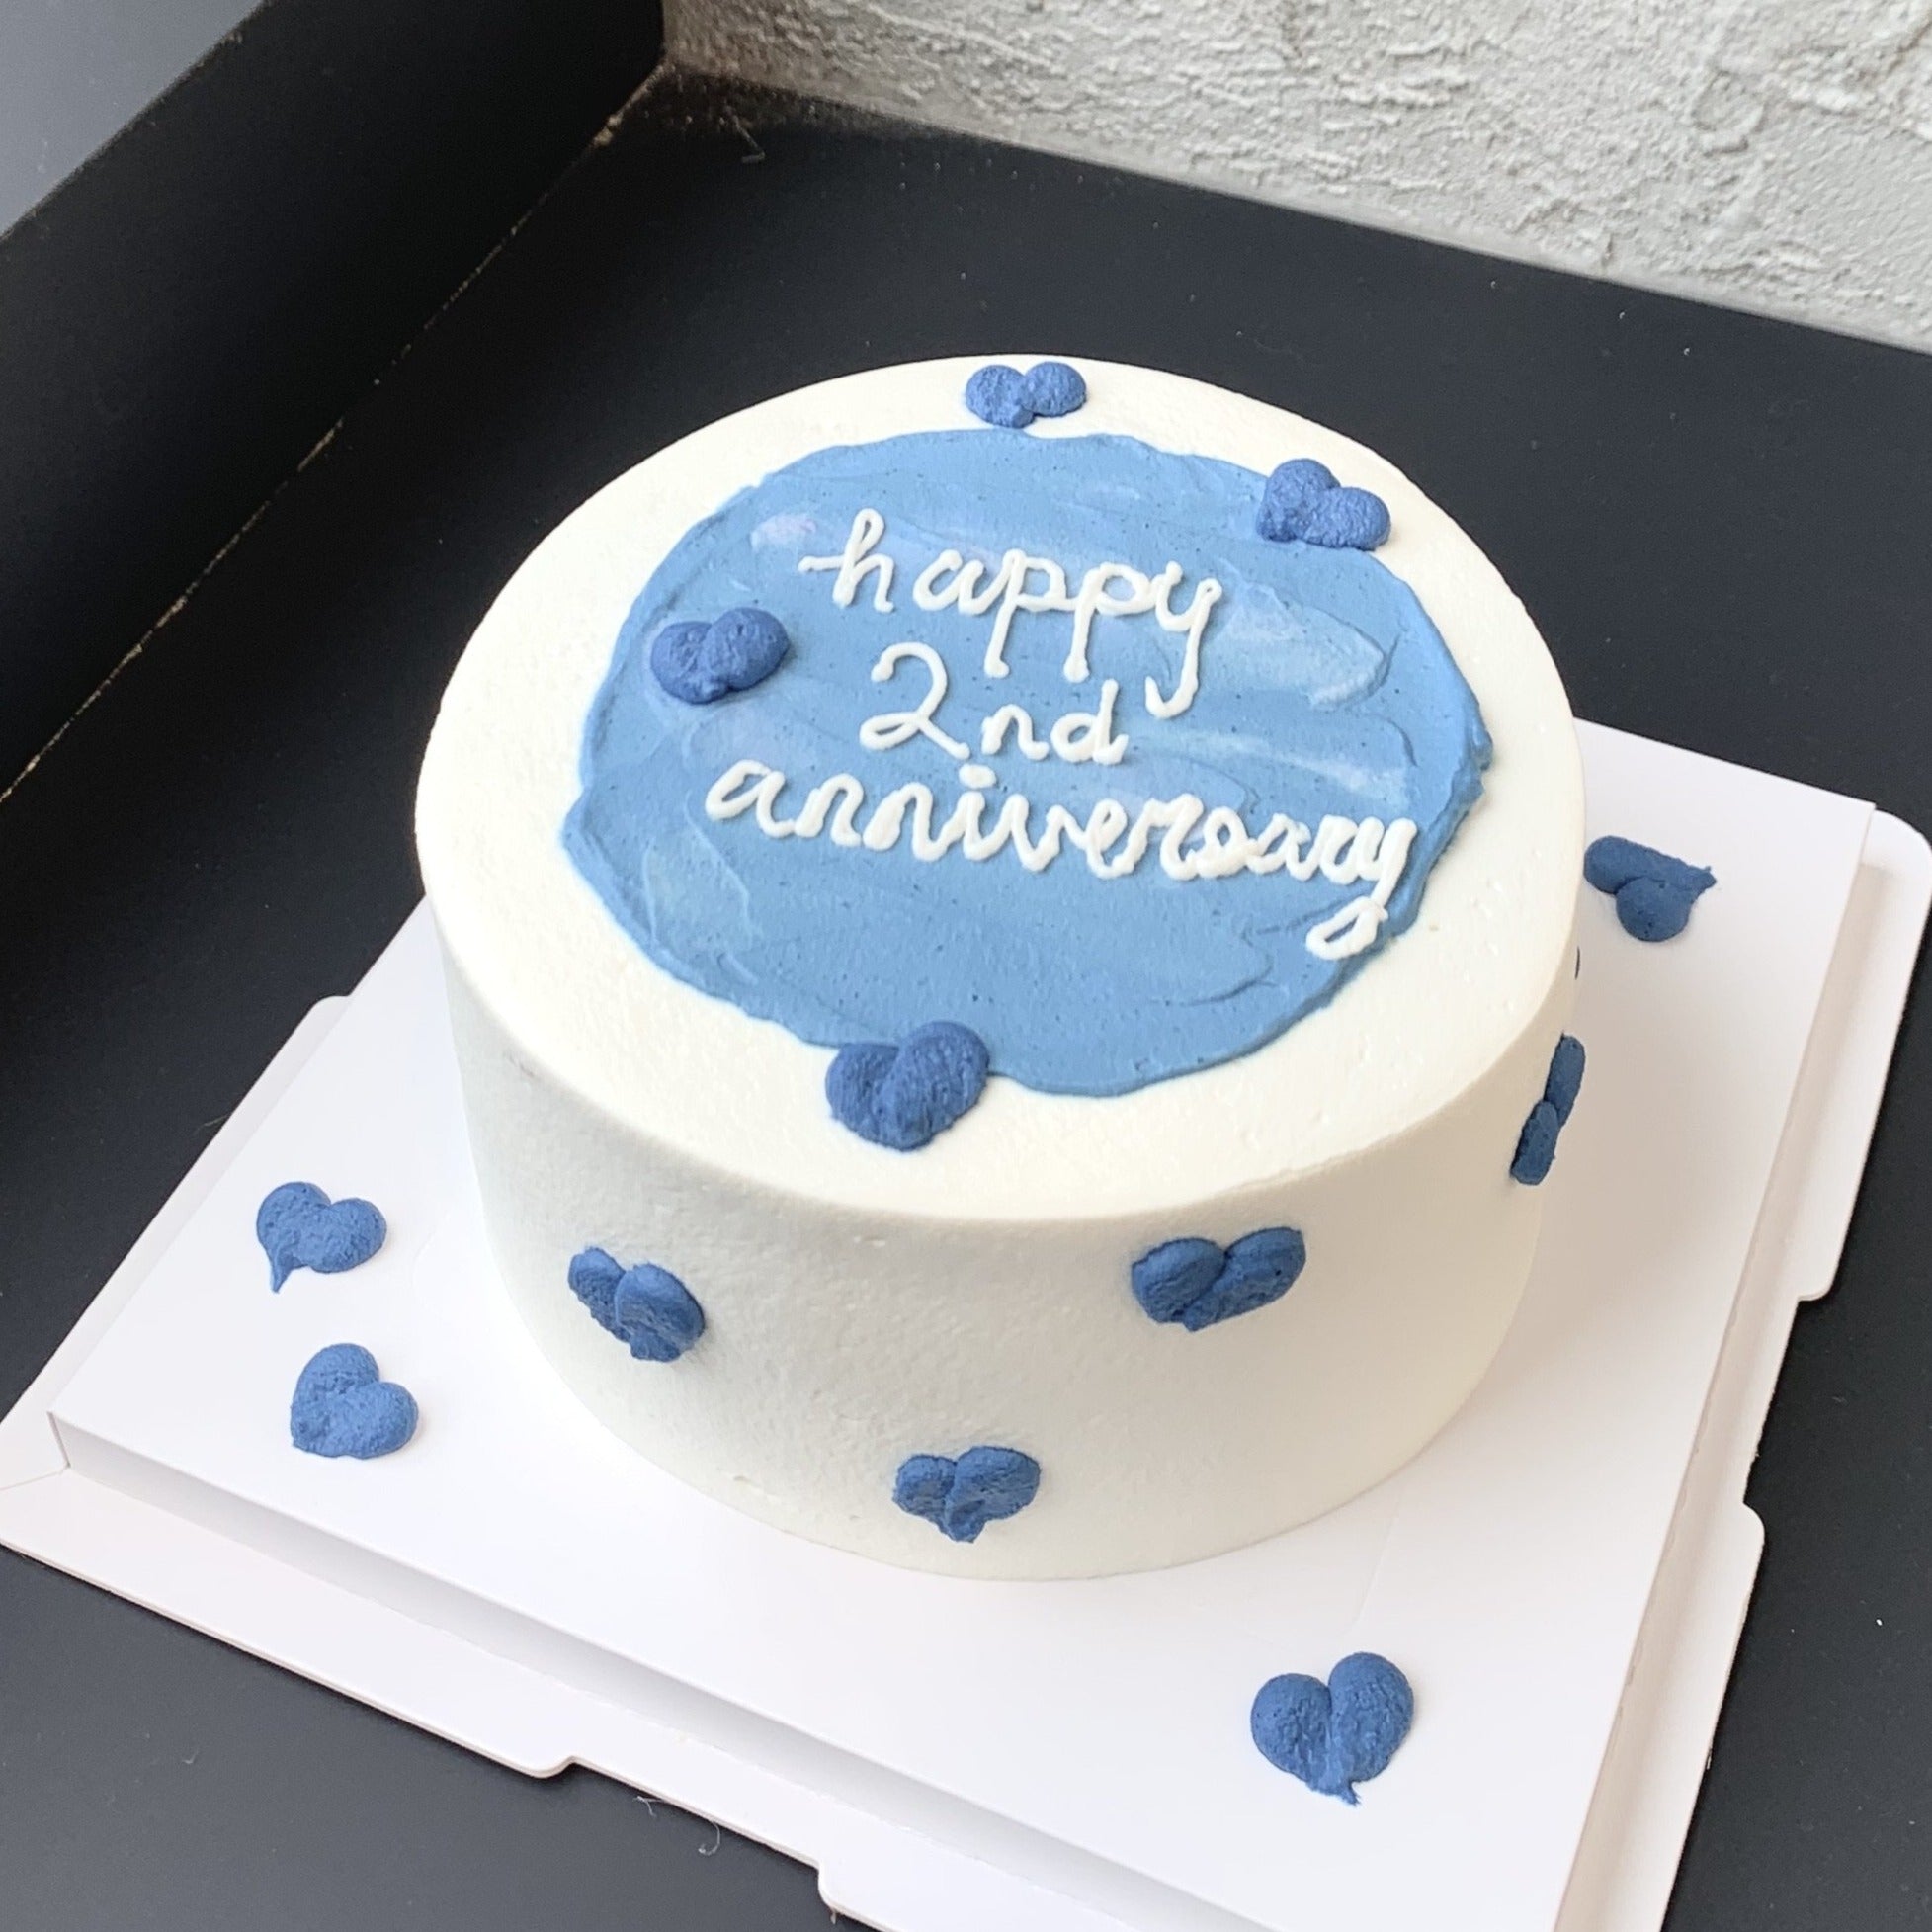 1st Anniversary Cake Design | Simple Anniversary Cake | Yummy Cake